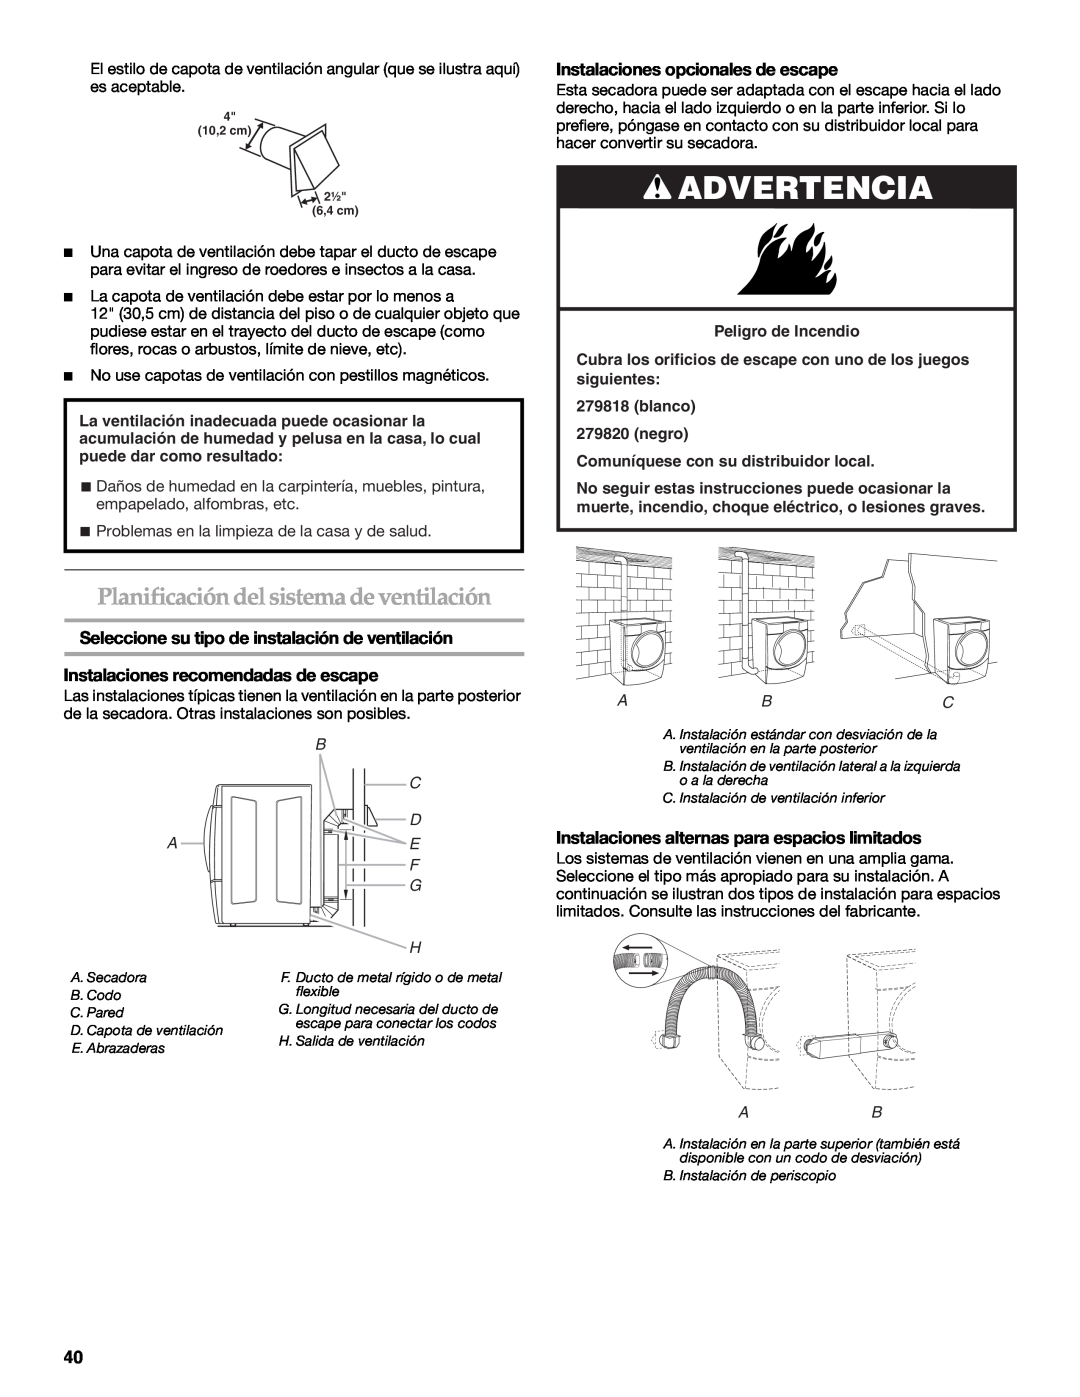 Maytag W10099070 manual Planificación delsistema de ventilación, Instalaciones opcionales de escape, Advertencia 